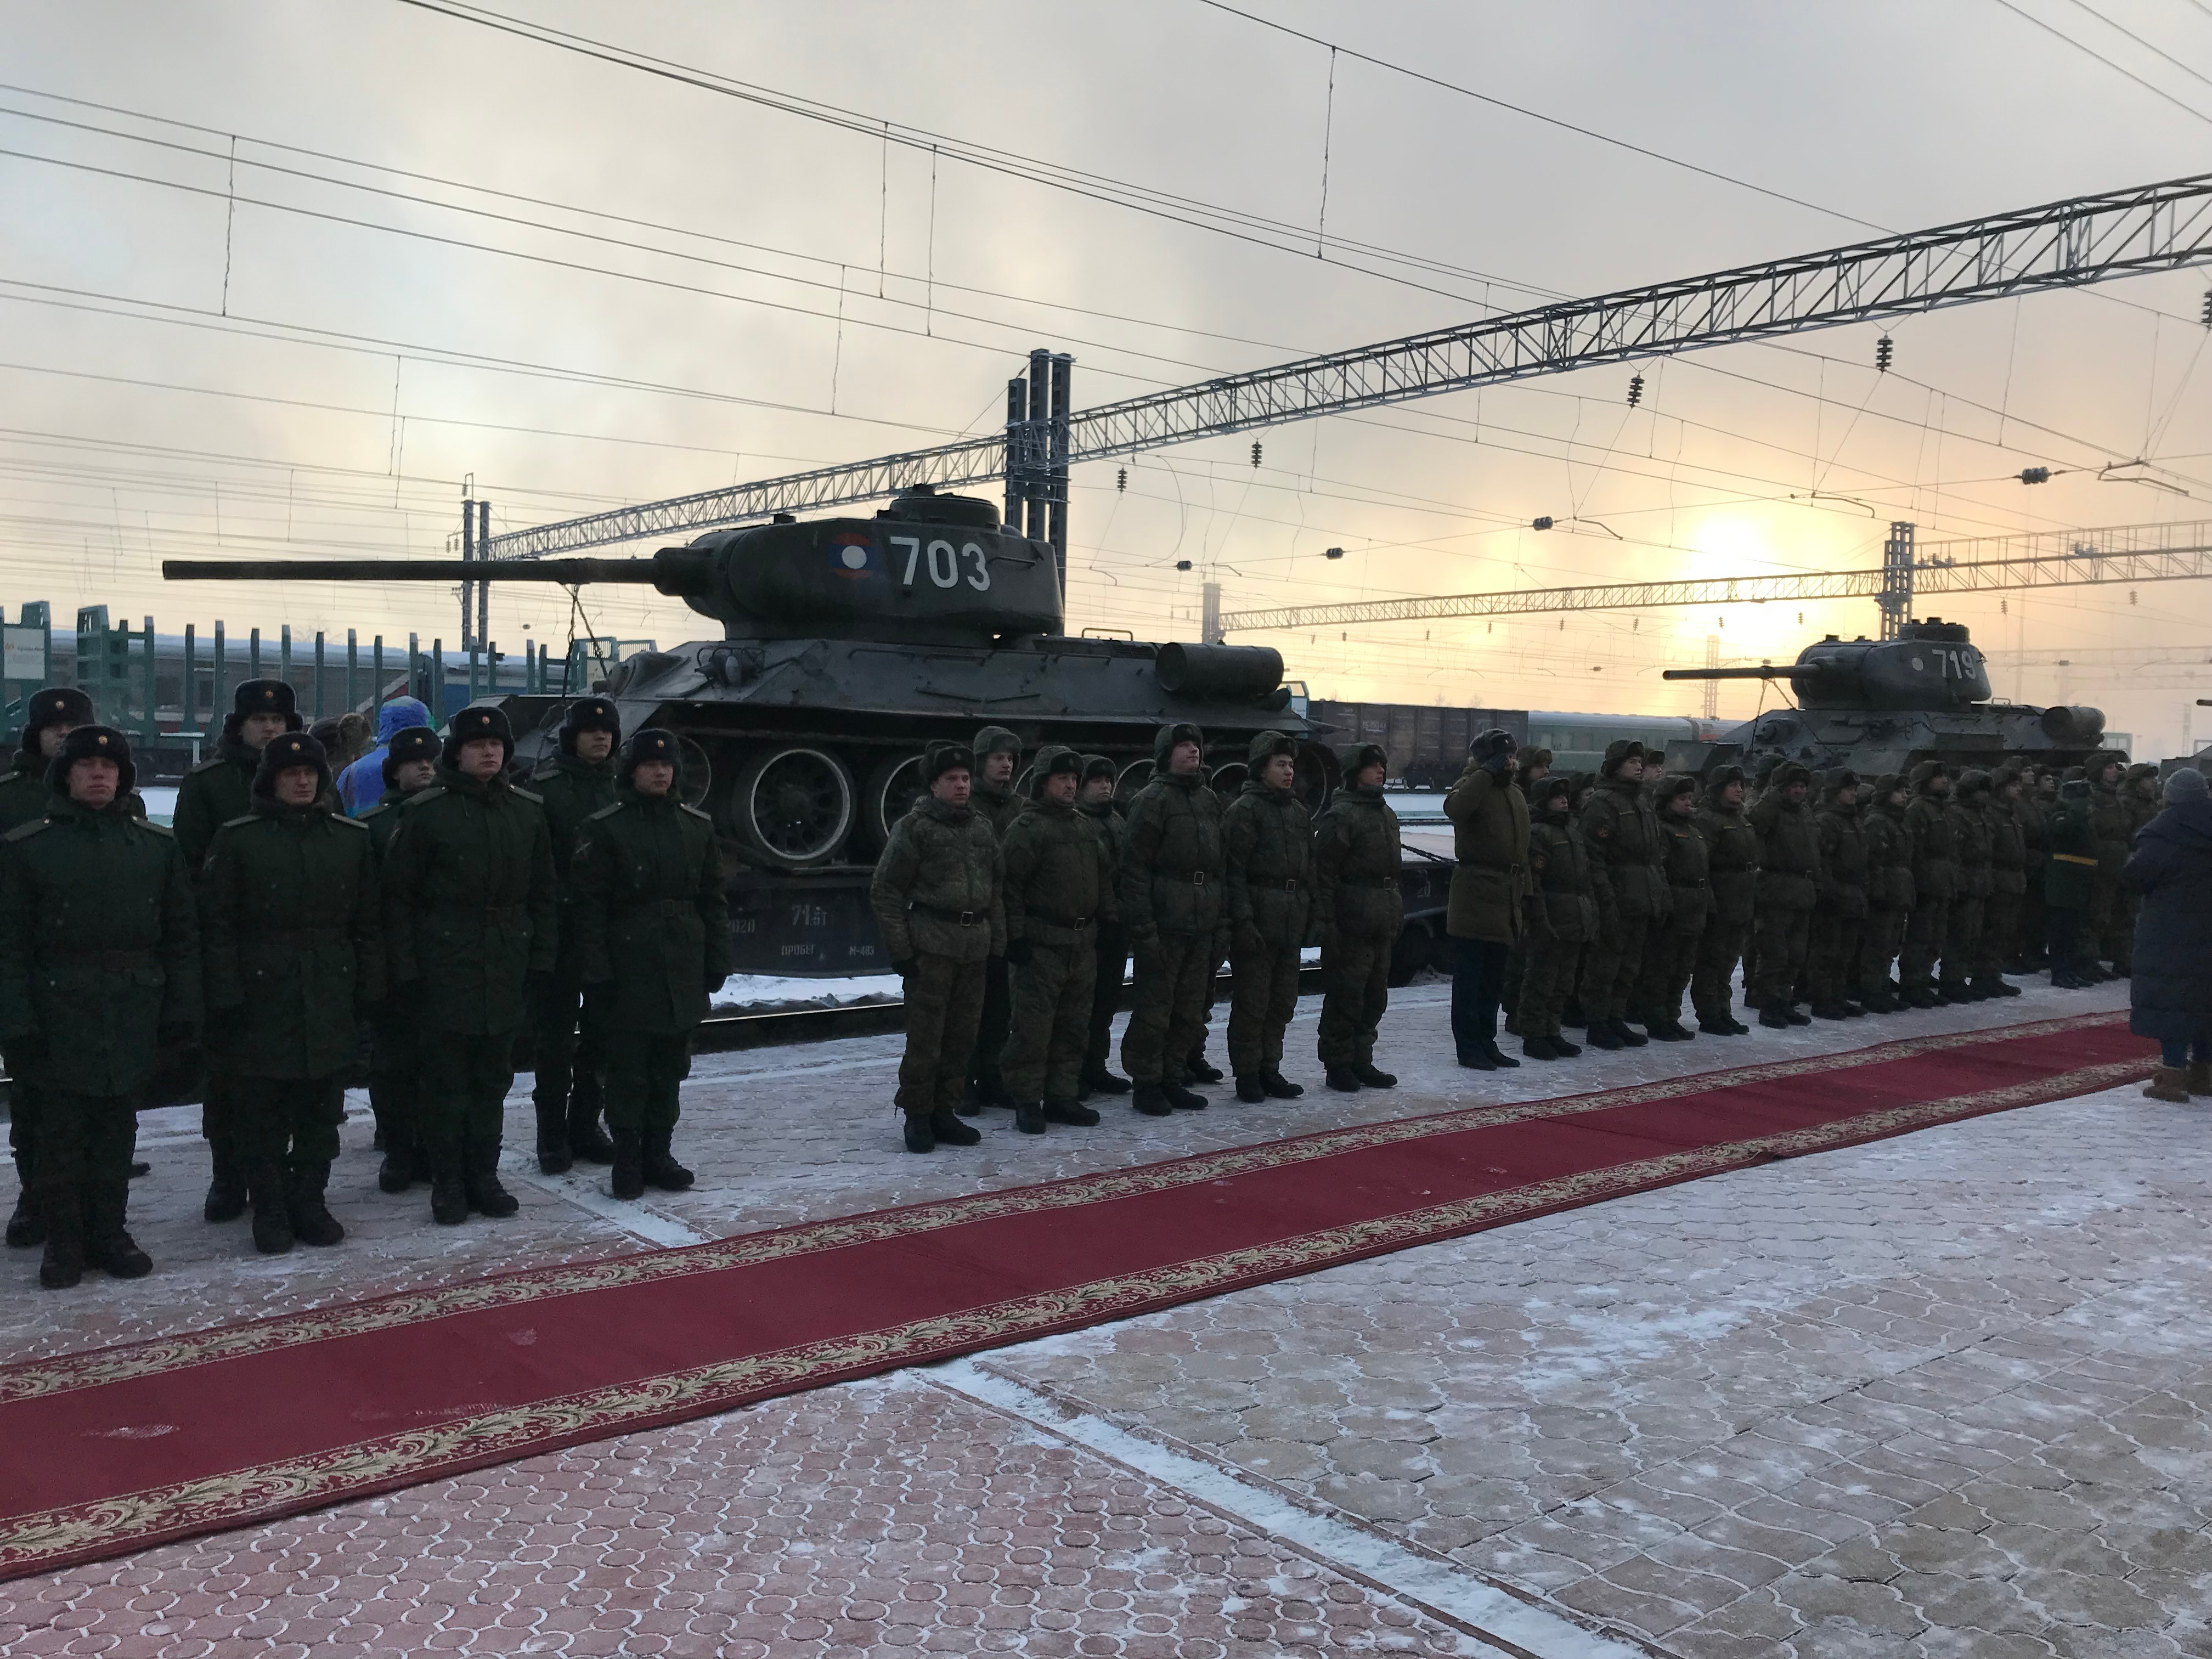 Эшелон с танками Т-34, которые Лаос сообщил РФ, встретили в Иркутске